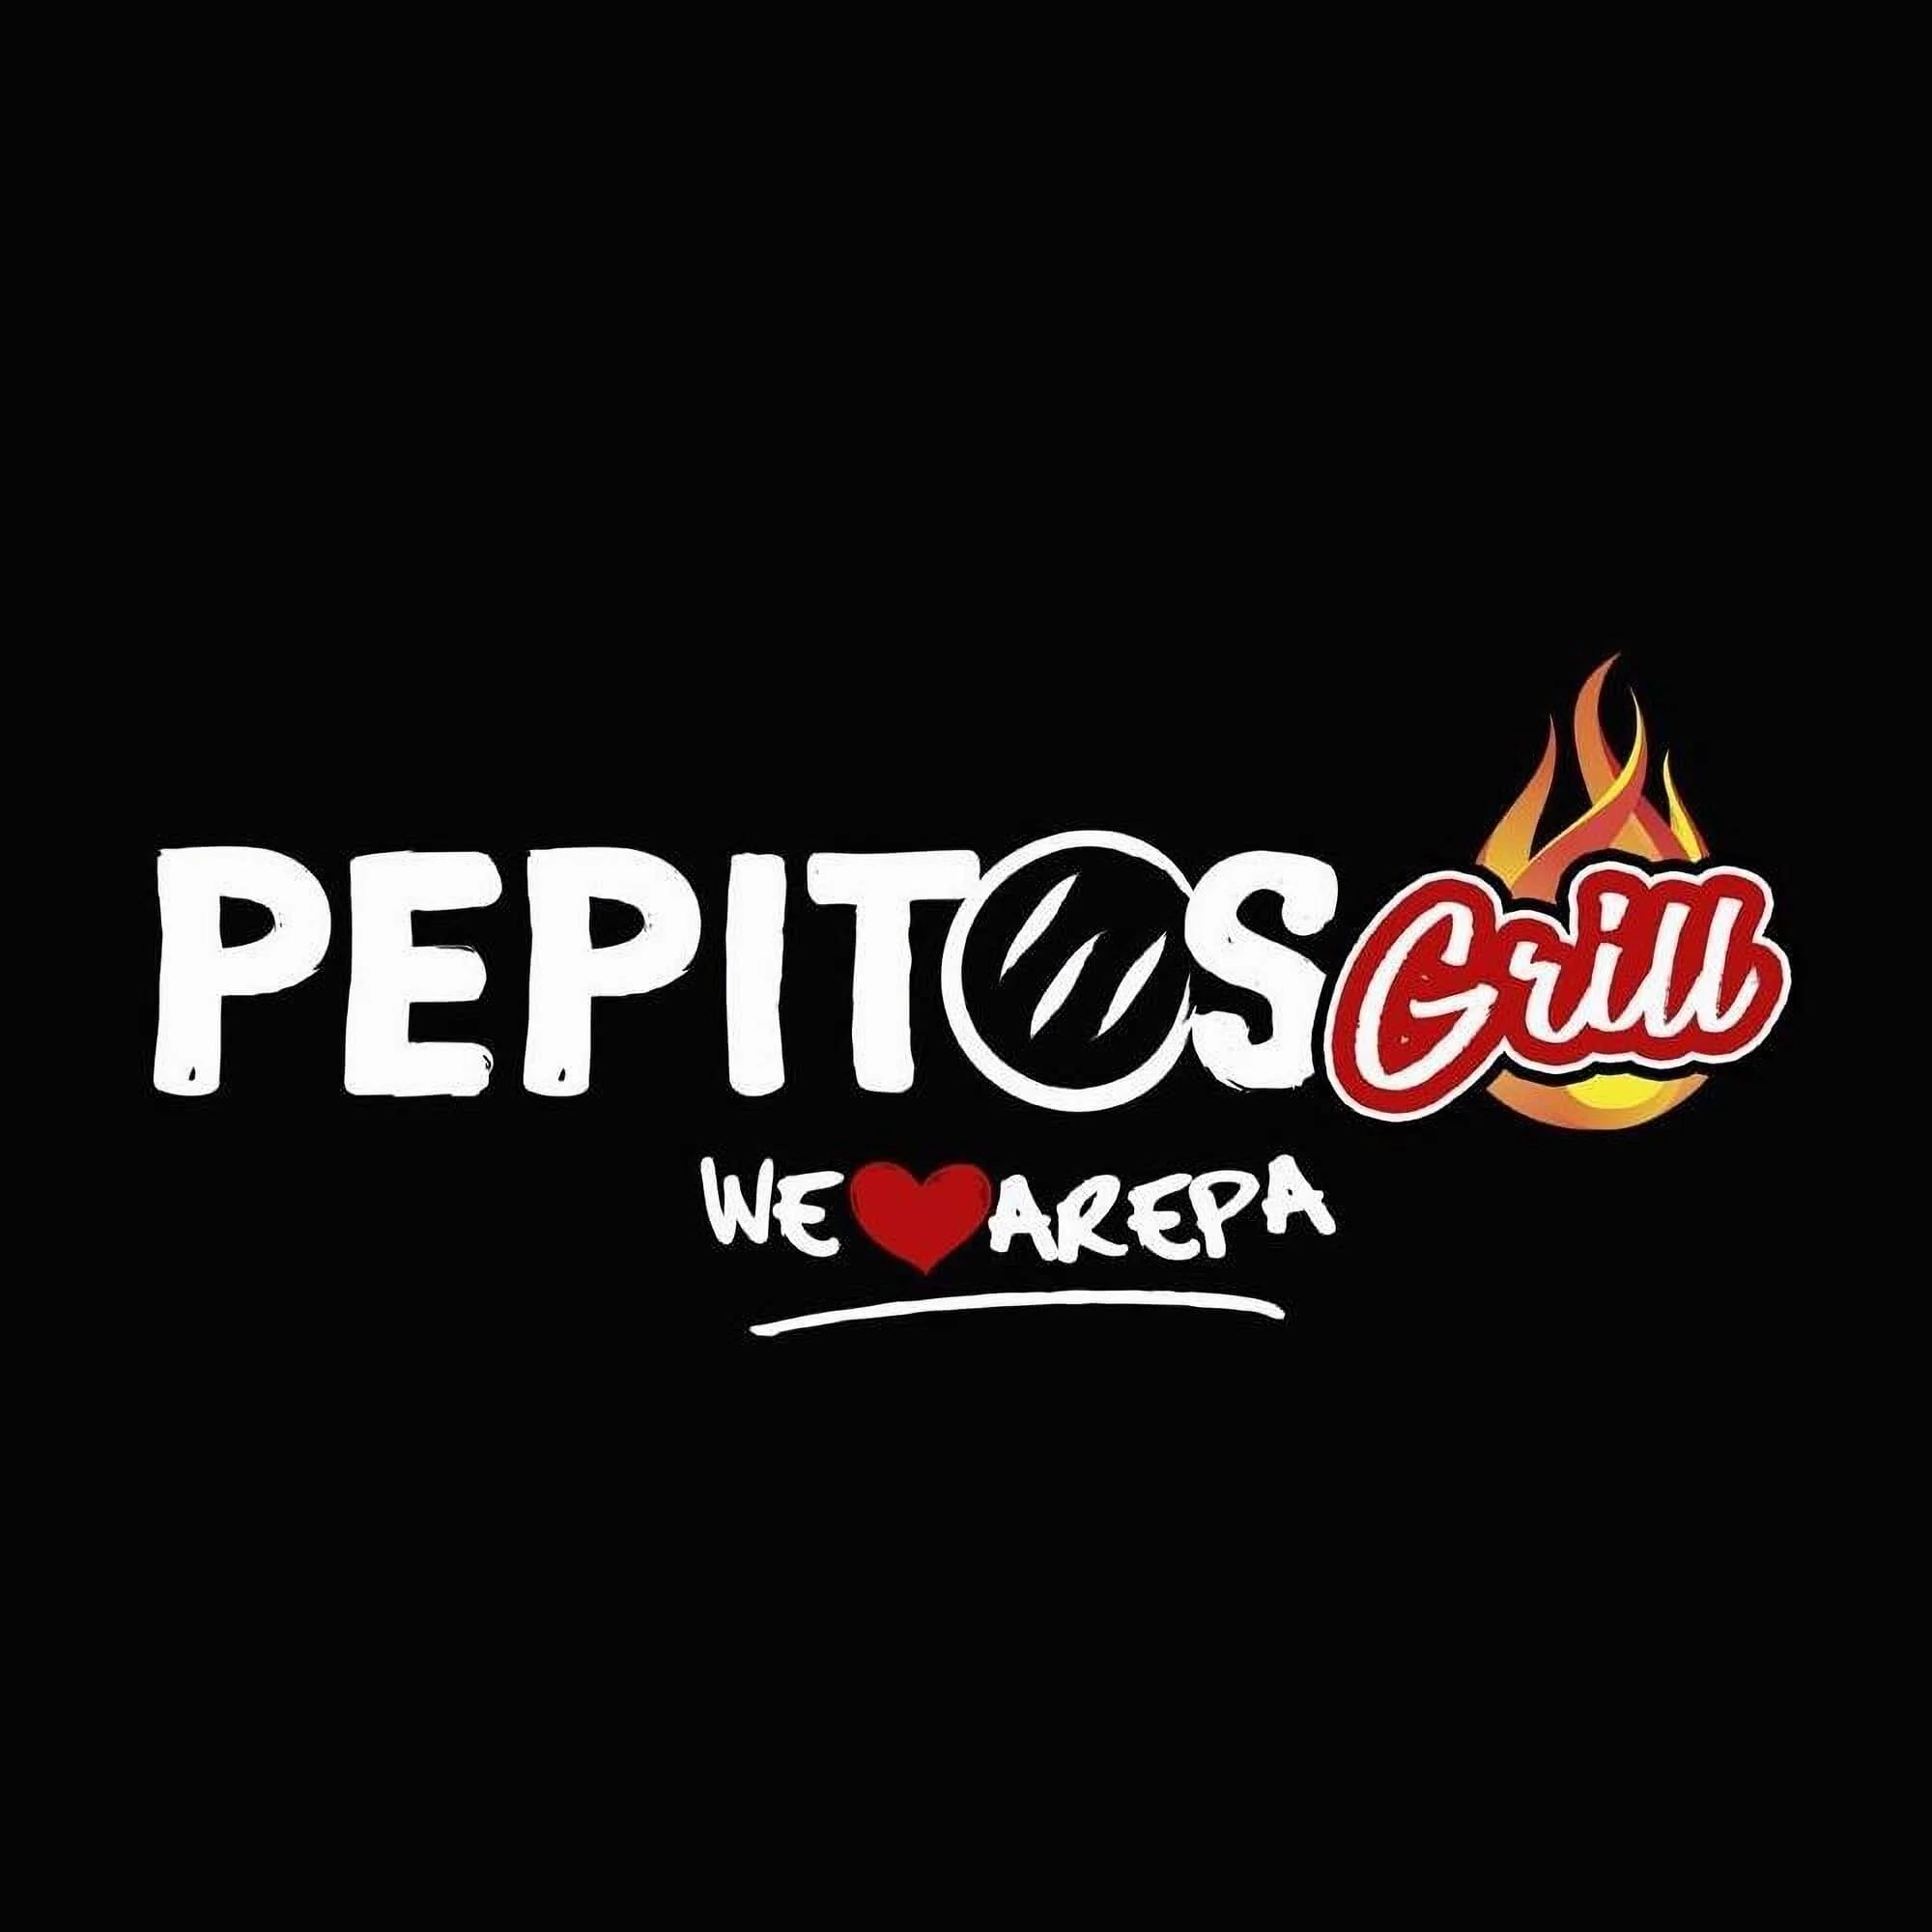 Restaurantes-pepitos-grill-17207